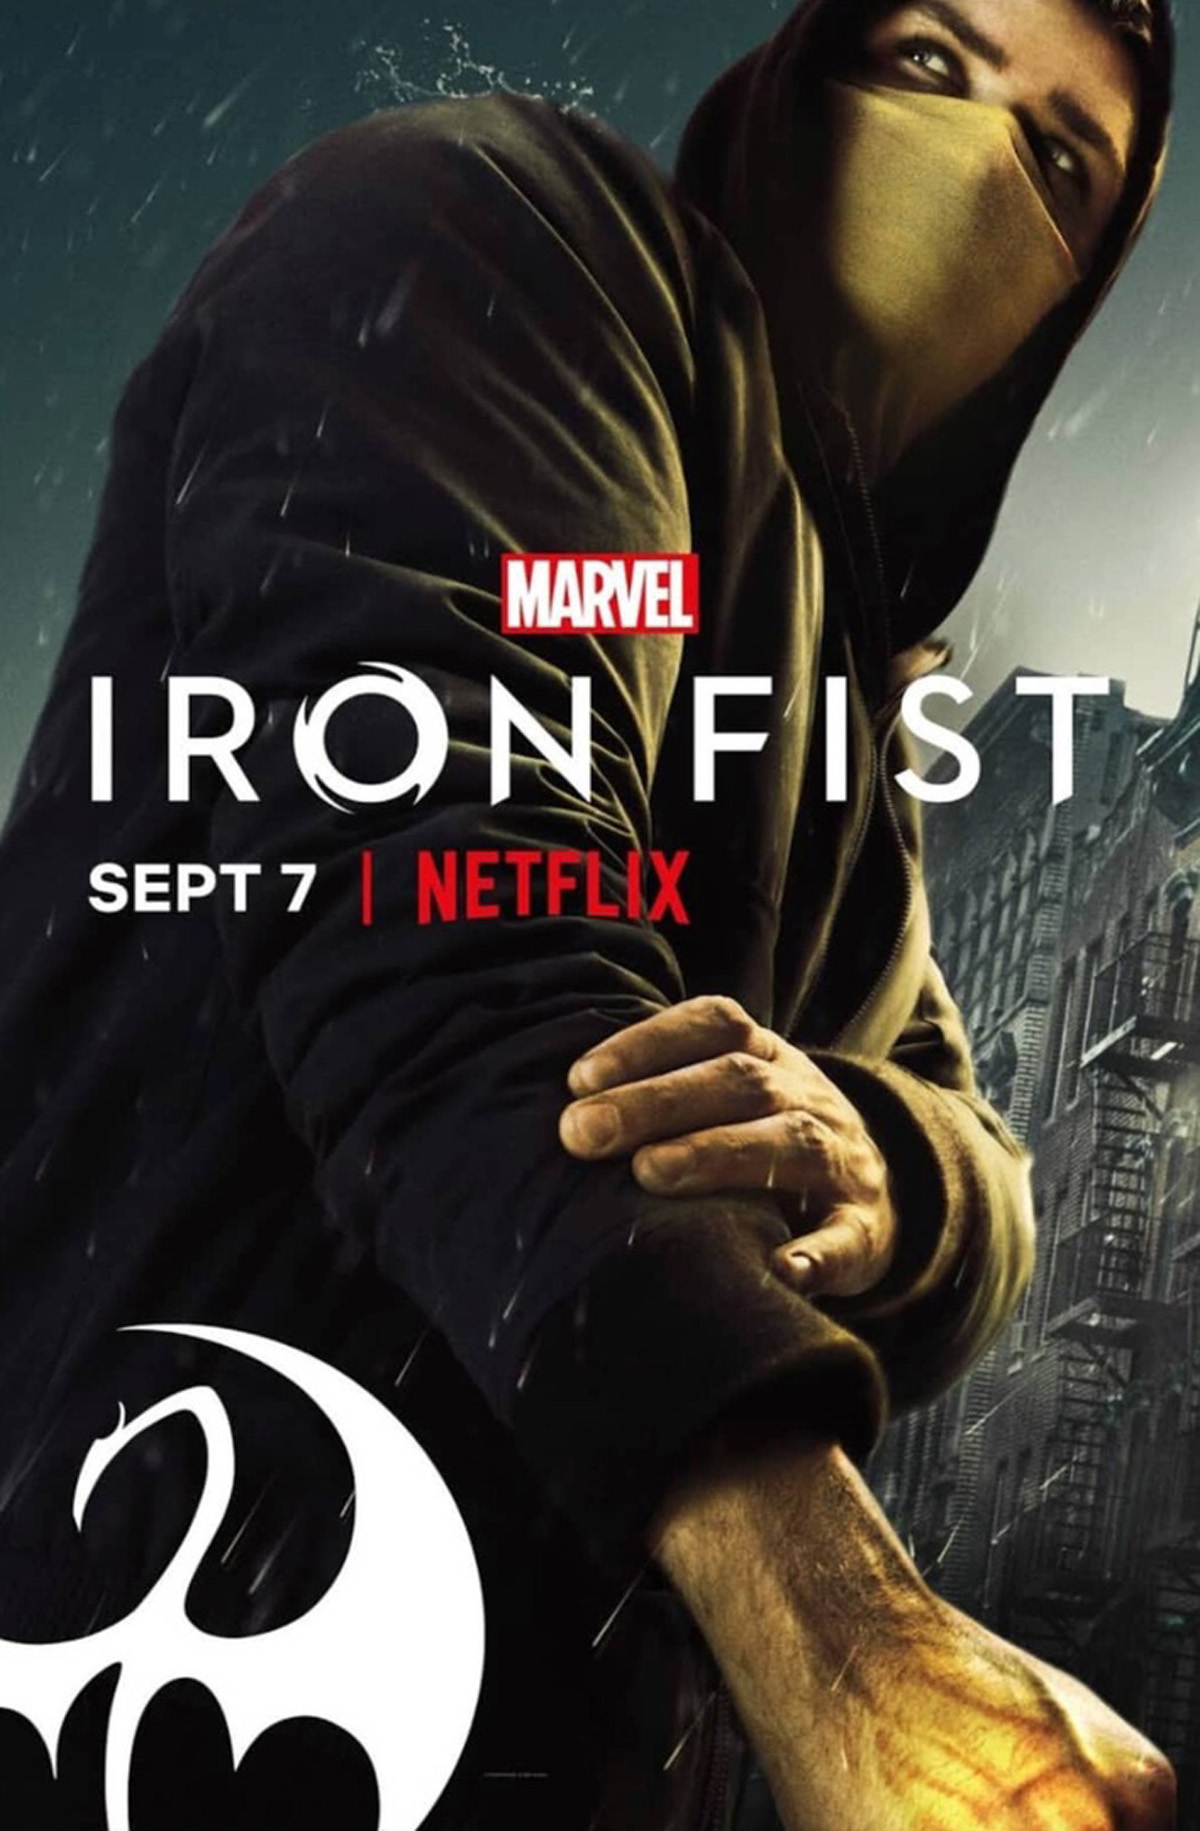 Marvel's Iron Fist season 2 